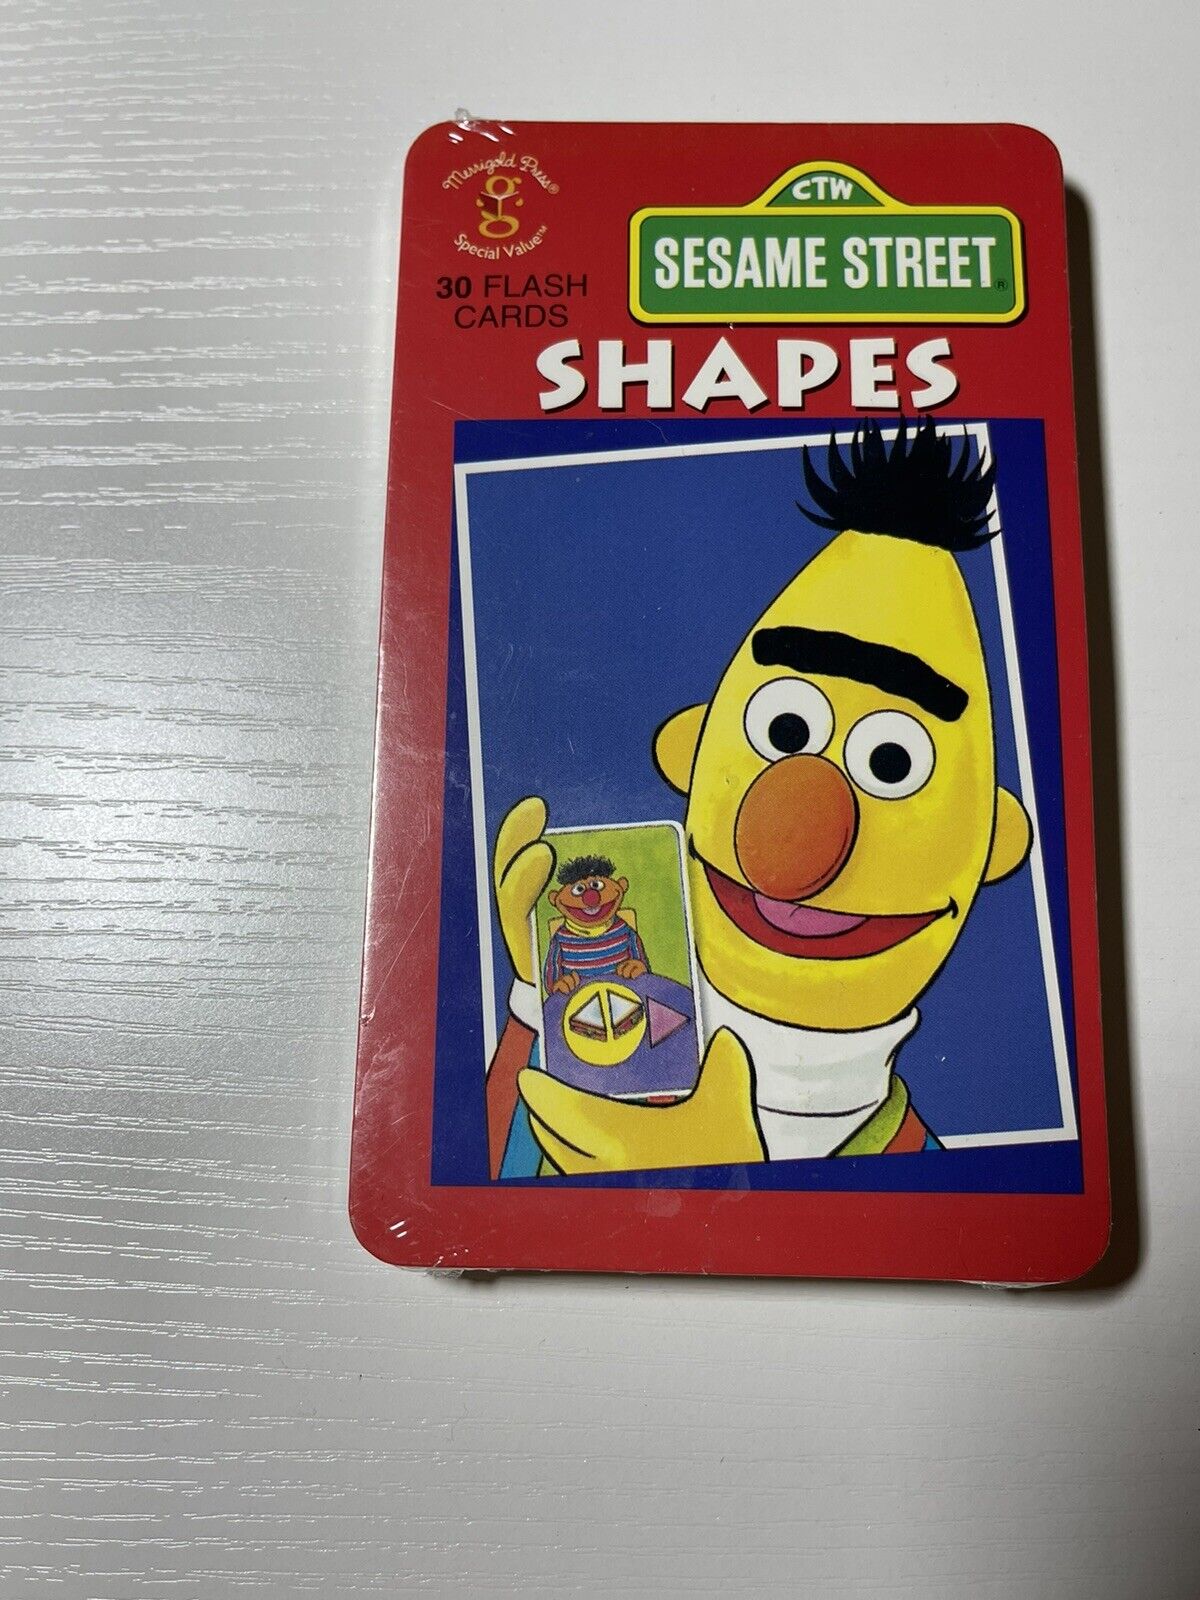 Vintage 1993 Ctw Sesame Street 30 Flash Cards- Shapes - New Sealed